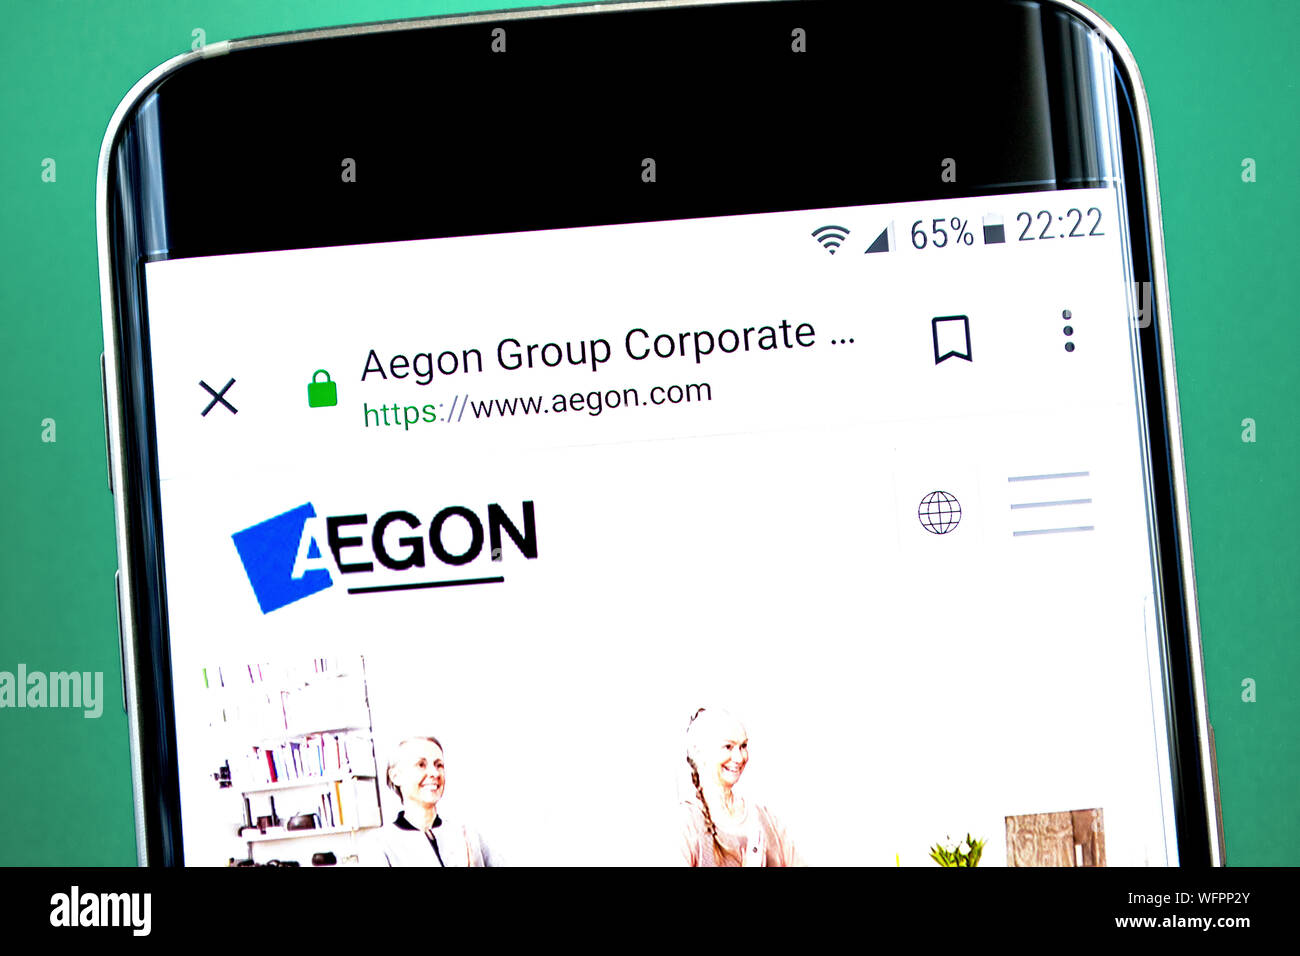 Berdyansk, Ucraina - 1 Luglio 2019: Editoriale illustrativa di Aegon website homepage. Aegon logo visibile sullo schermo del telefono. Foto Stock